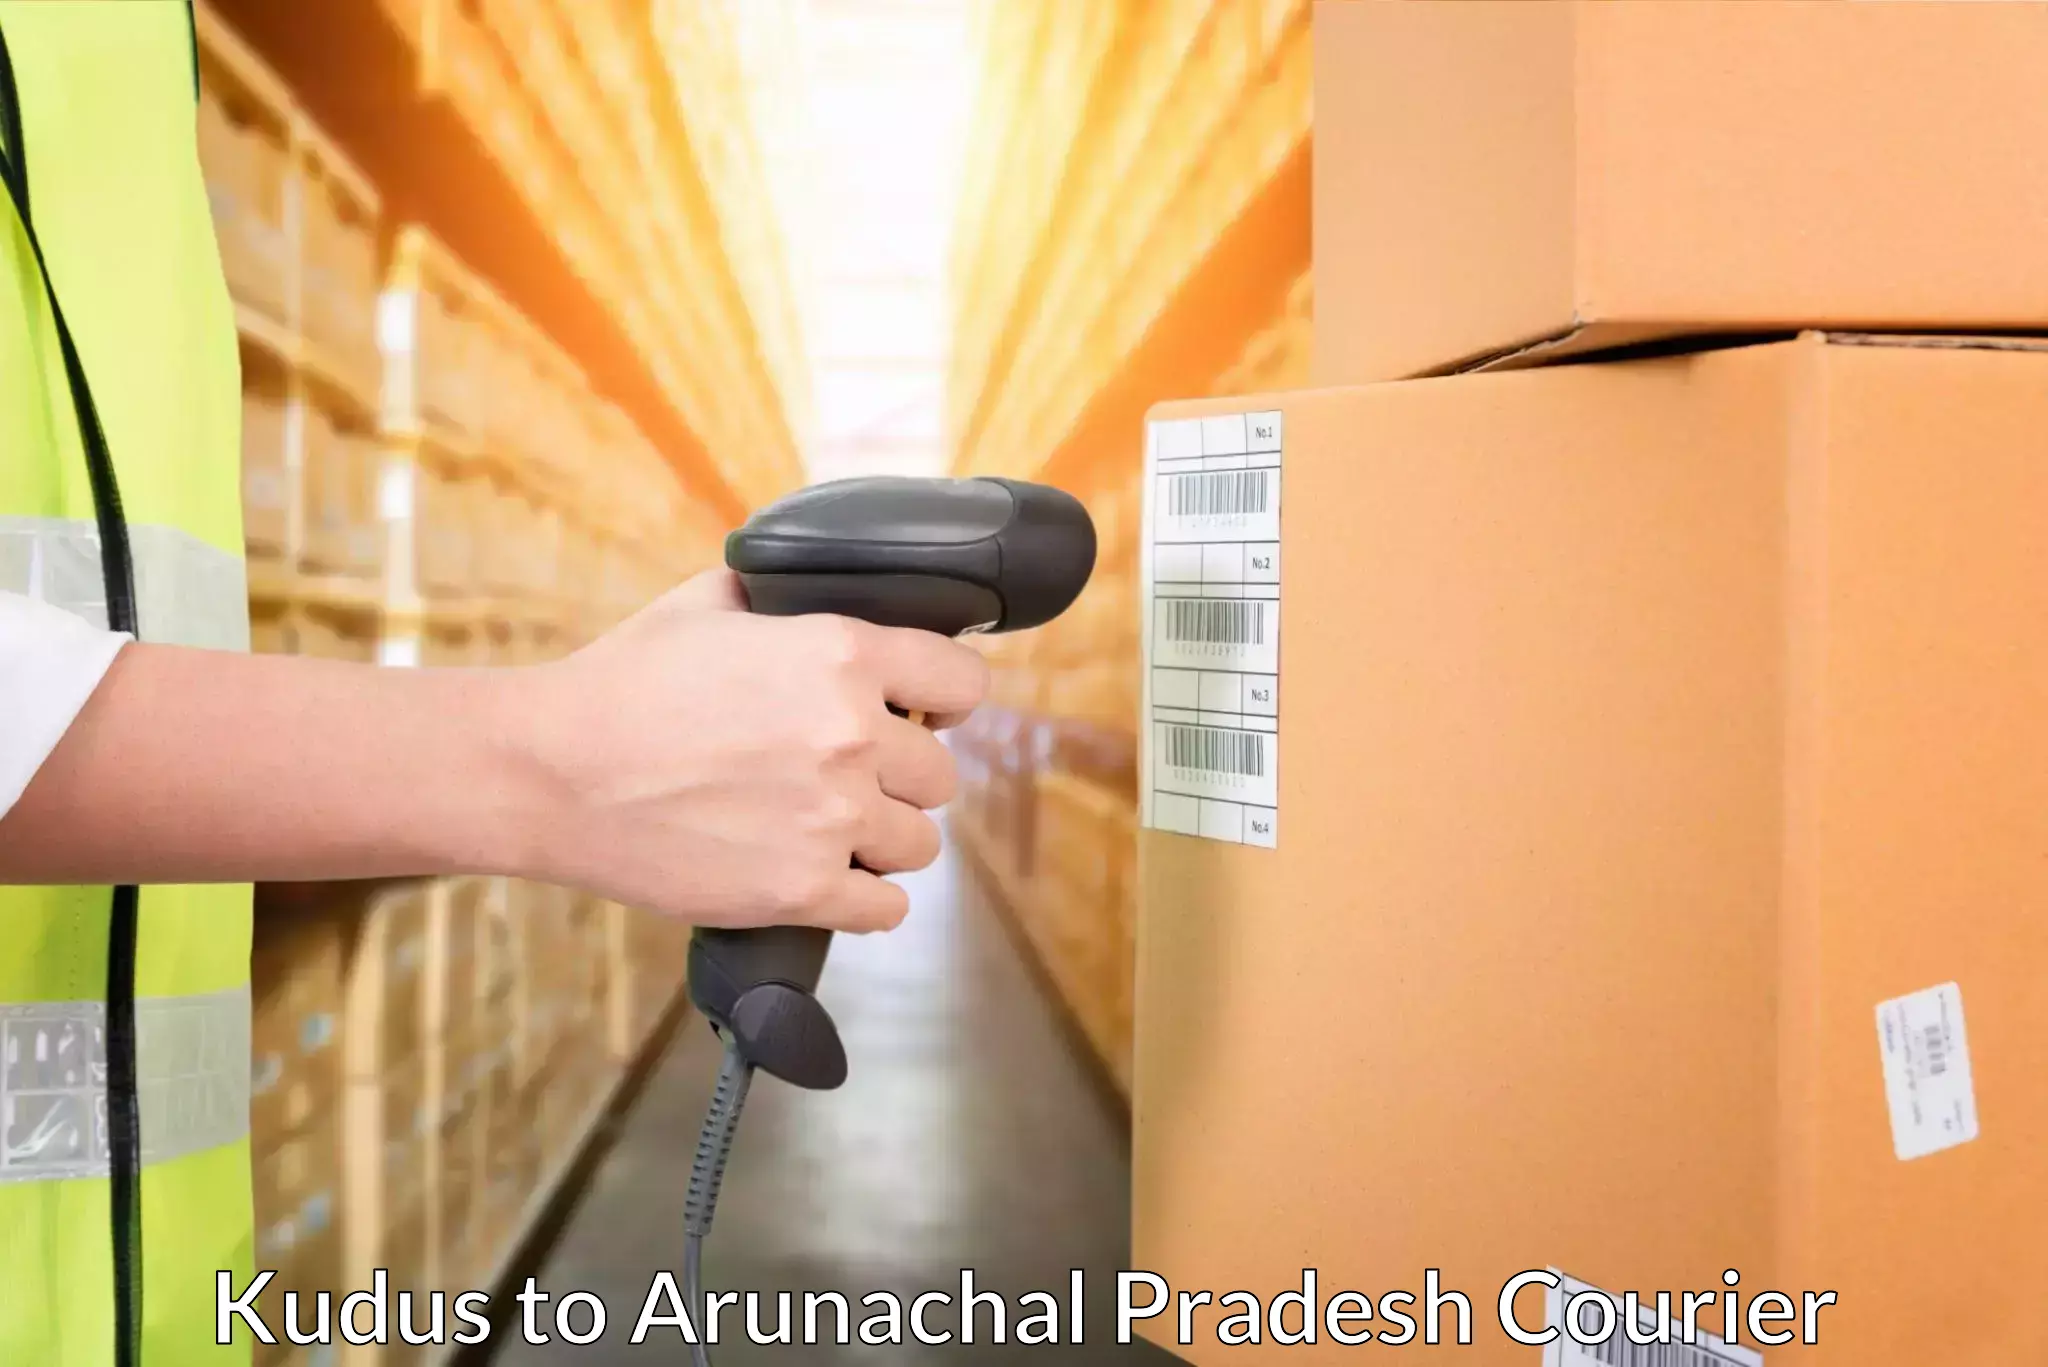 Express delivery network Kudus to Arunachal Pradesh